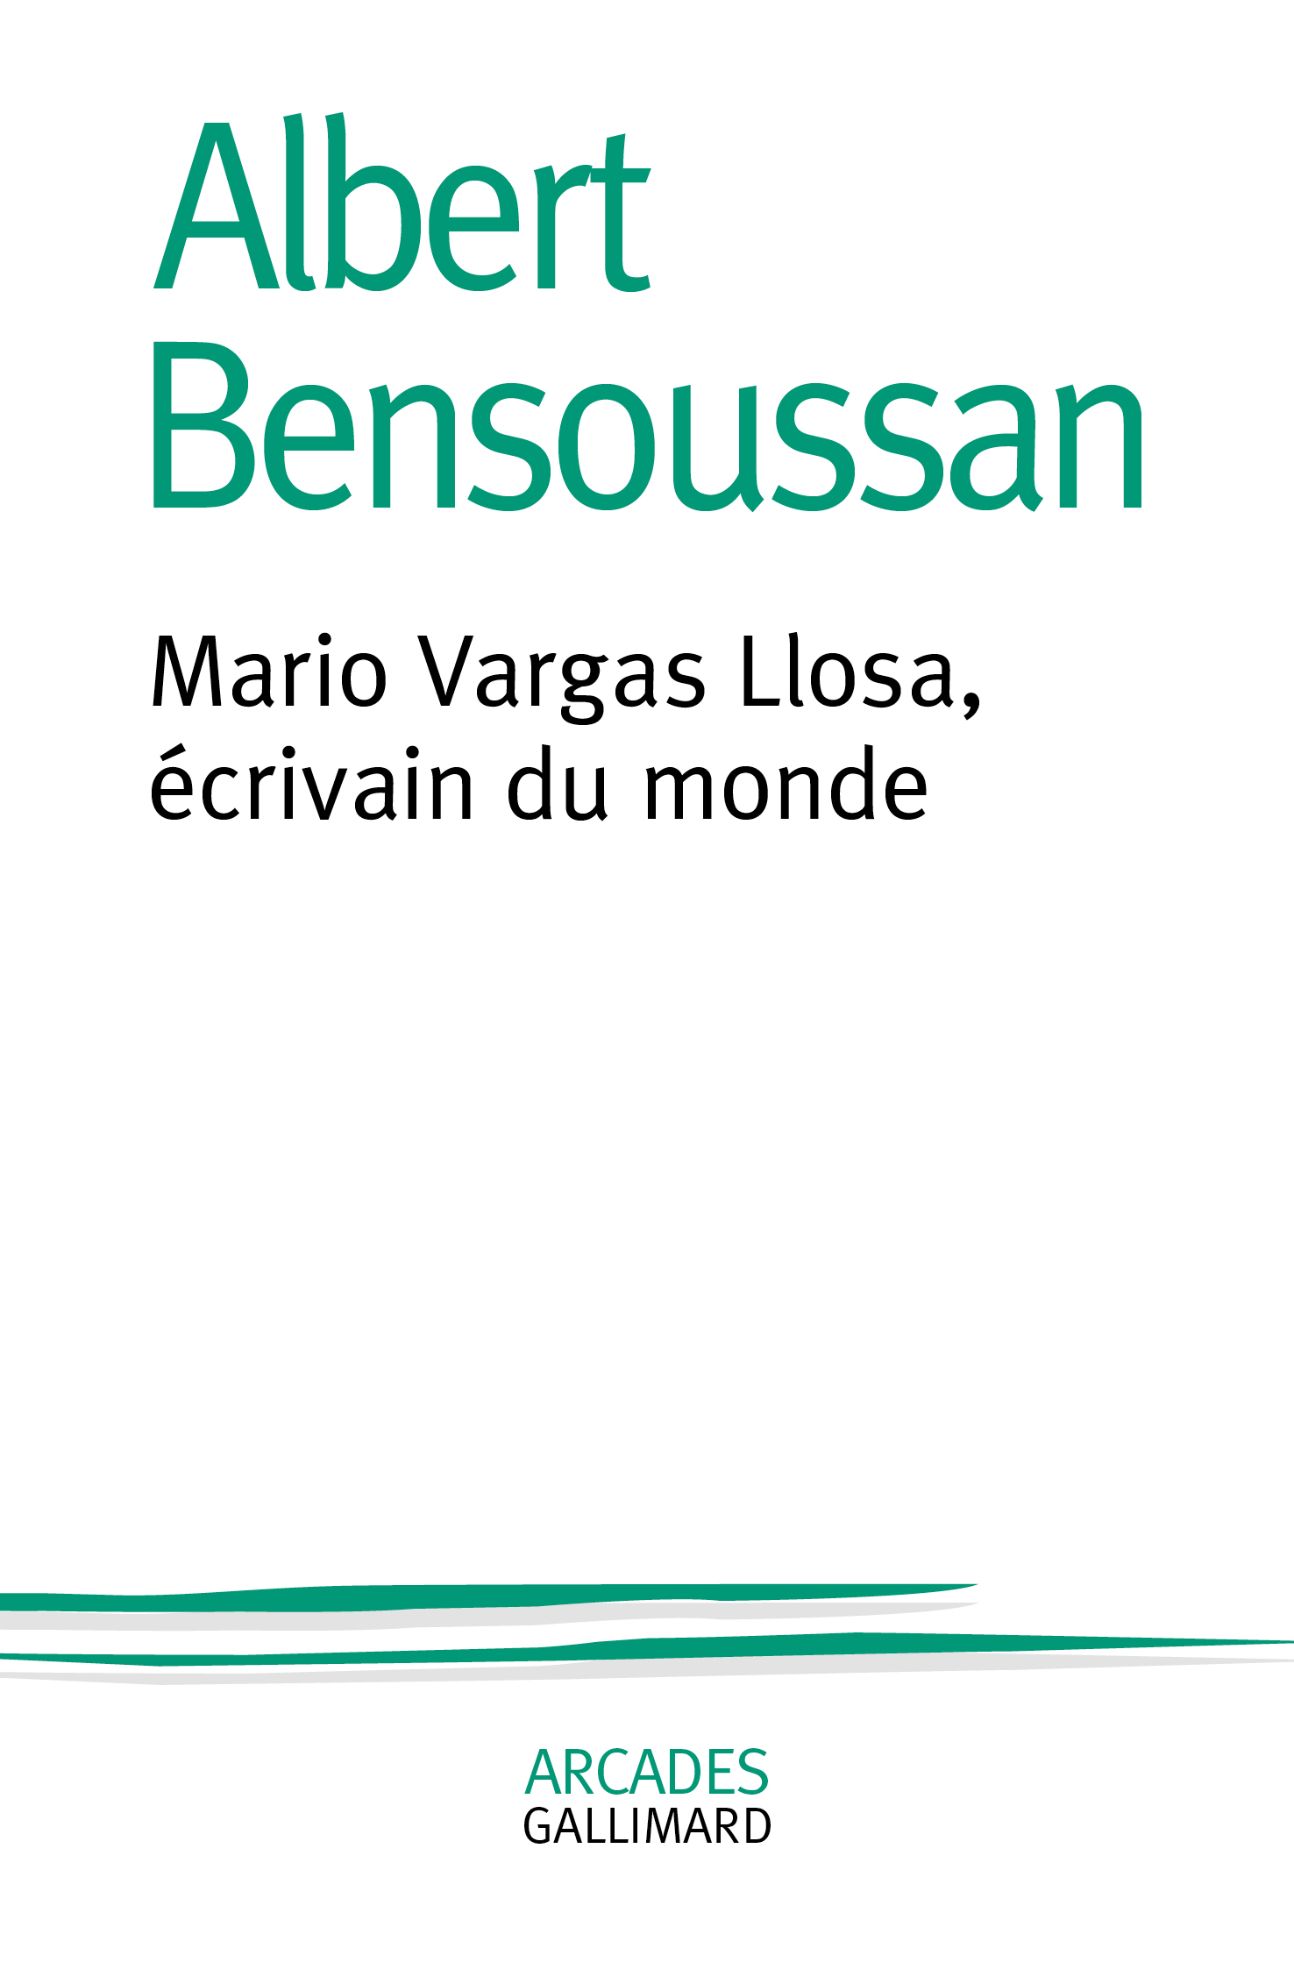 Albert Bensoussan, Mario Vargas Llosa, écrivain du monde